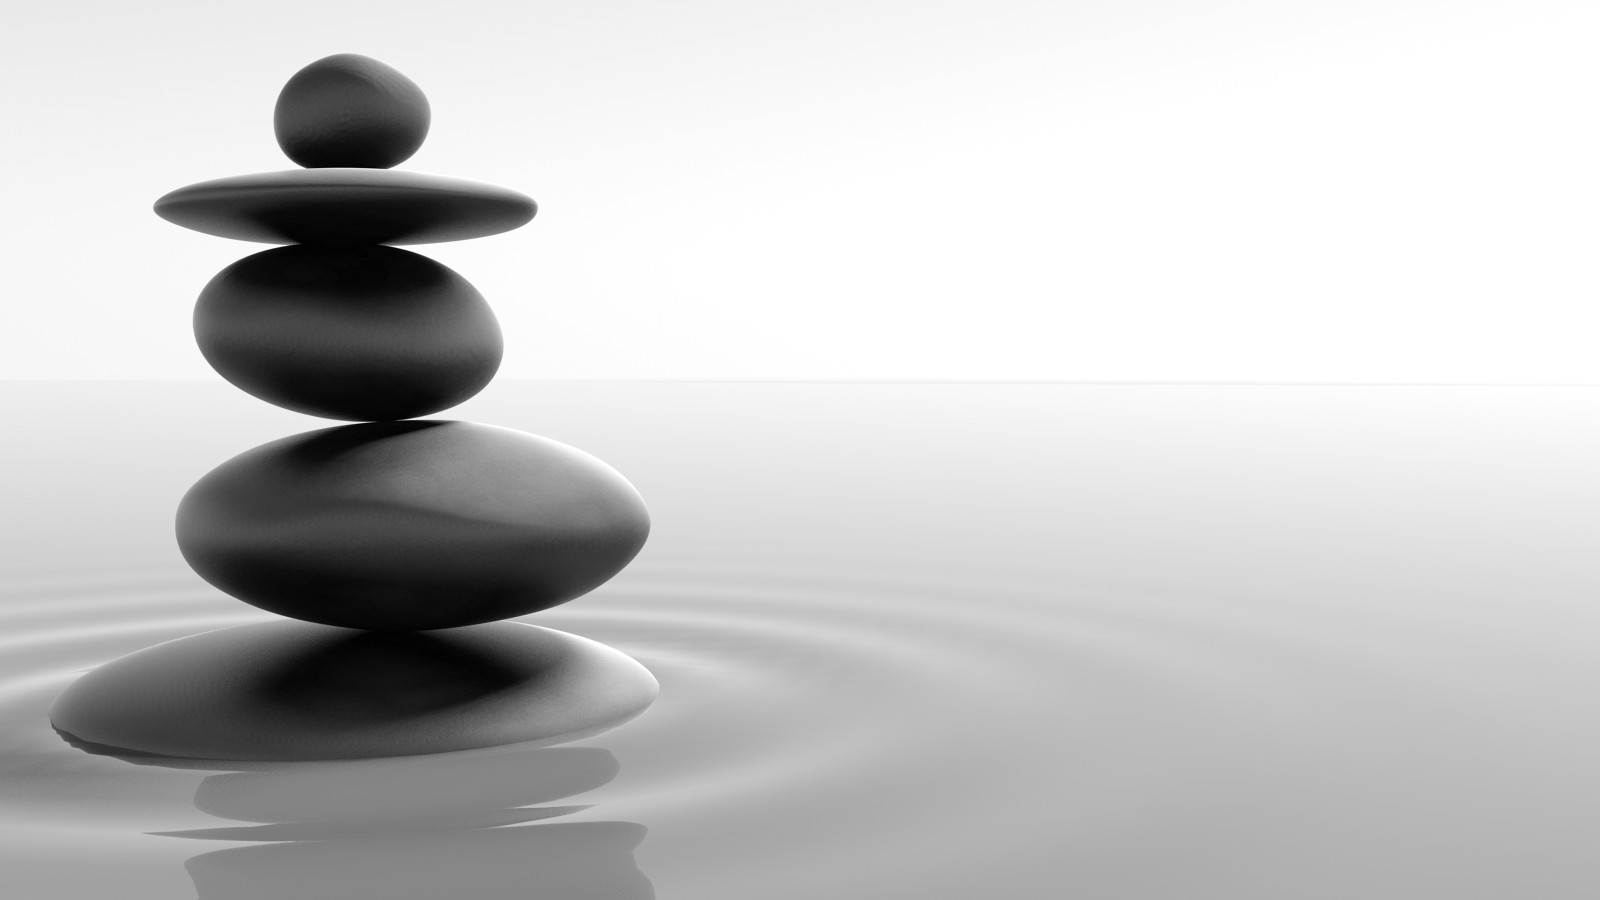 Zen Tao Stones In Balance Peace Wallpaper